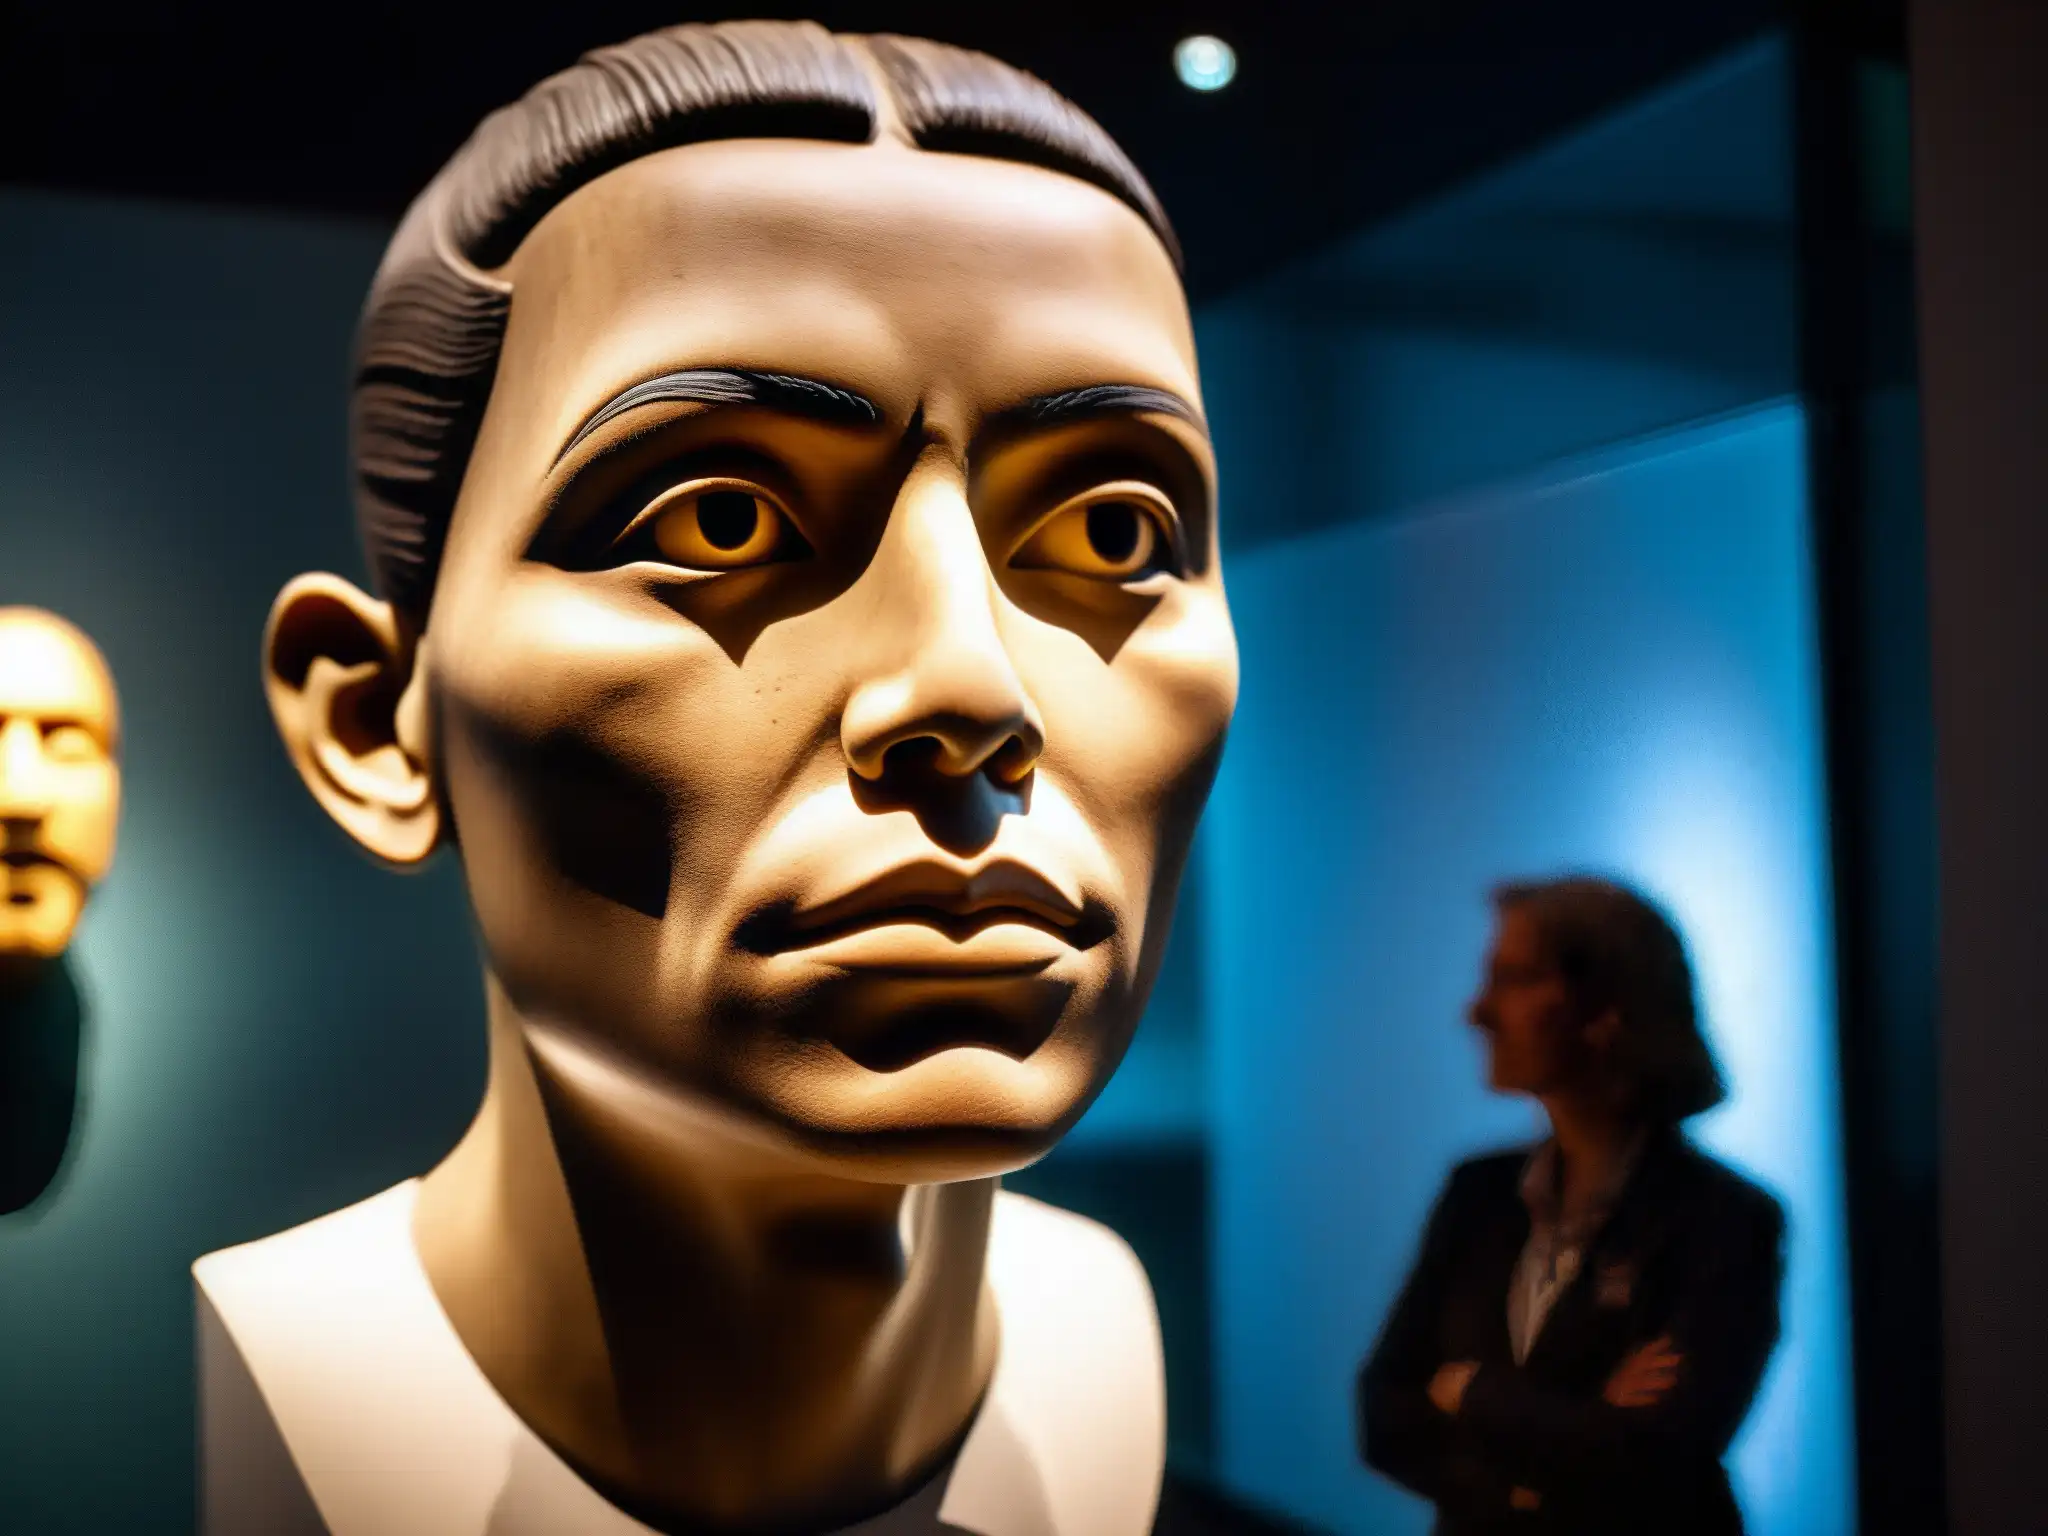 La imagen muestra la inquietante cabeza parlante en exhibición en el Museo de Ottawa